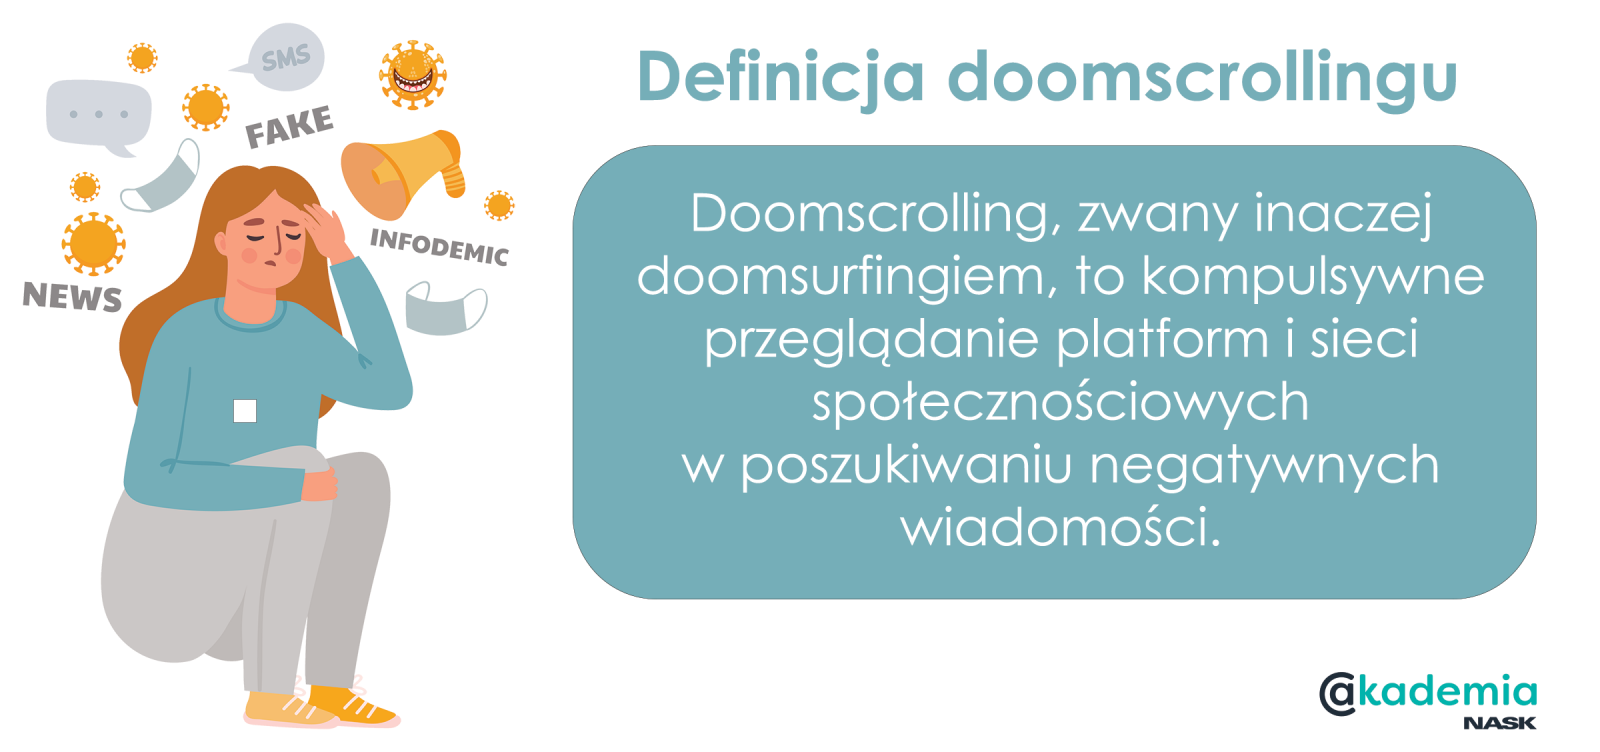 Czym jest doomscrolling? Doomscrolling, zwany inaczej doomsurfingiem, to kompulsywne przeglądanie platform i sieci społecznościowych w poszukiwaniu negatywnych wiadomości. 